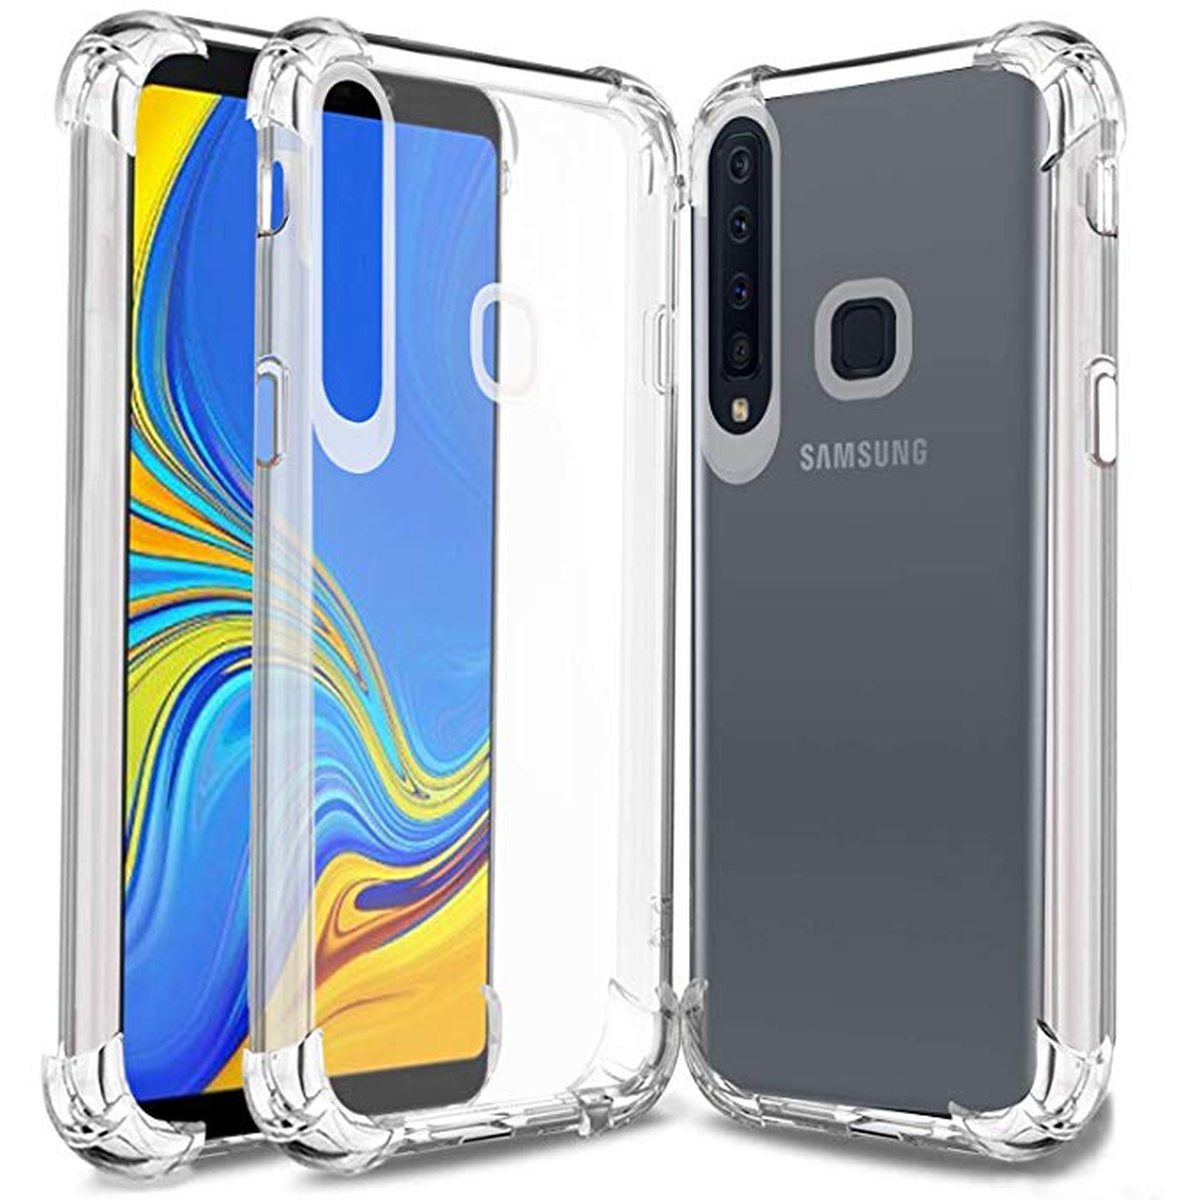 Samsung Galaxy A9 clear case